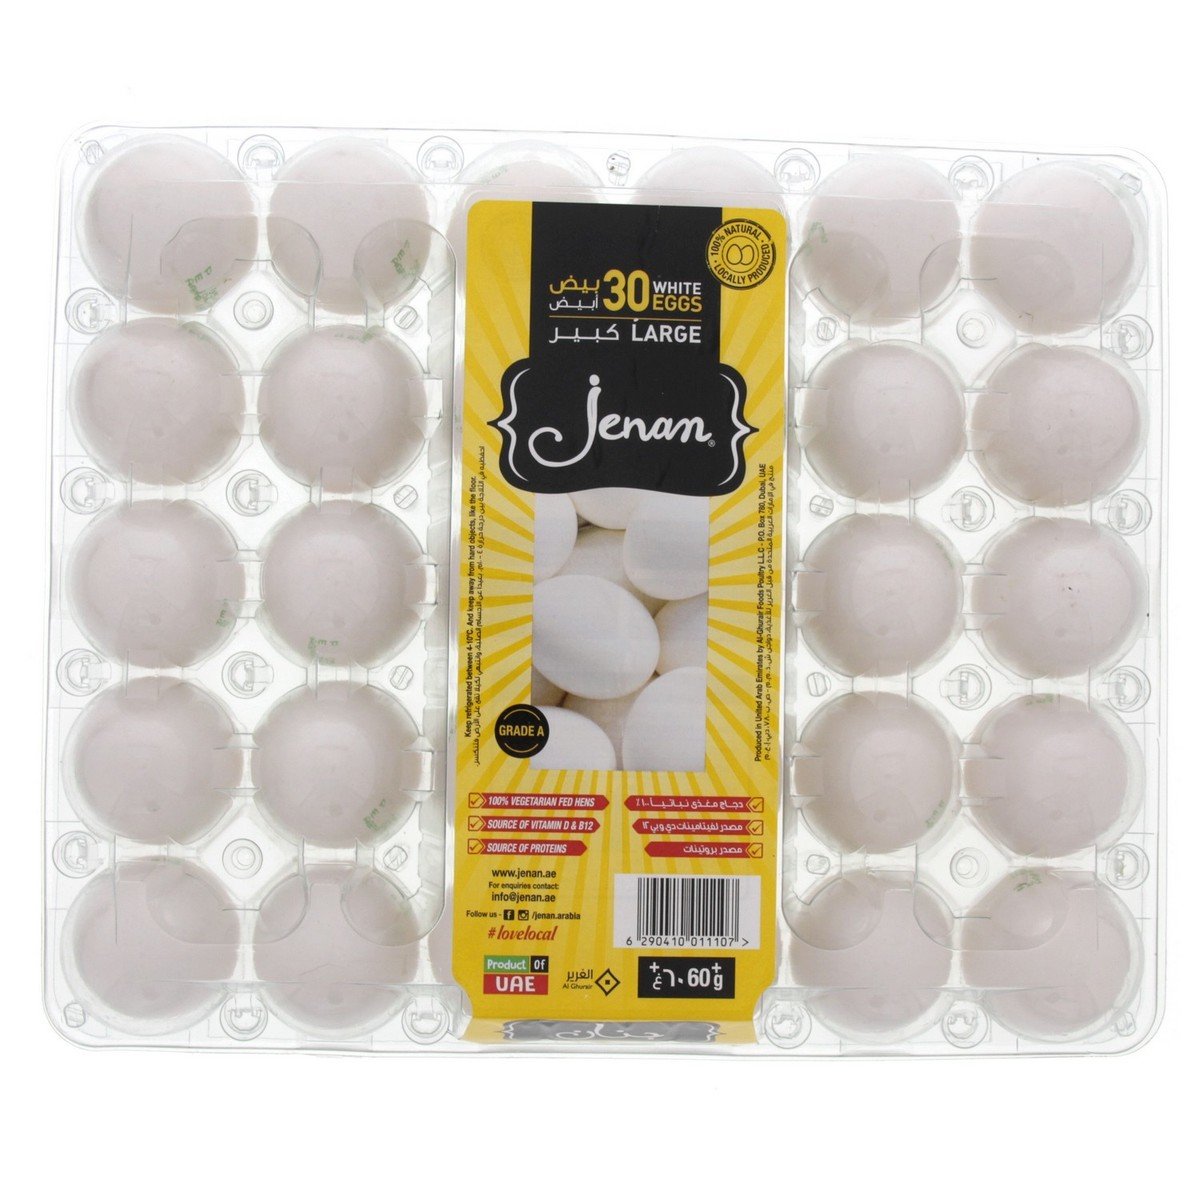 Jenan White Eggs Large 30 pcs